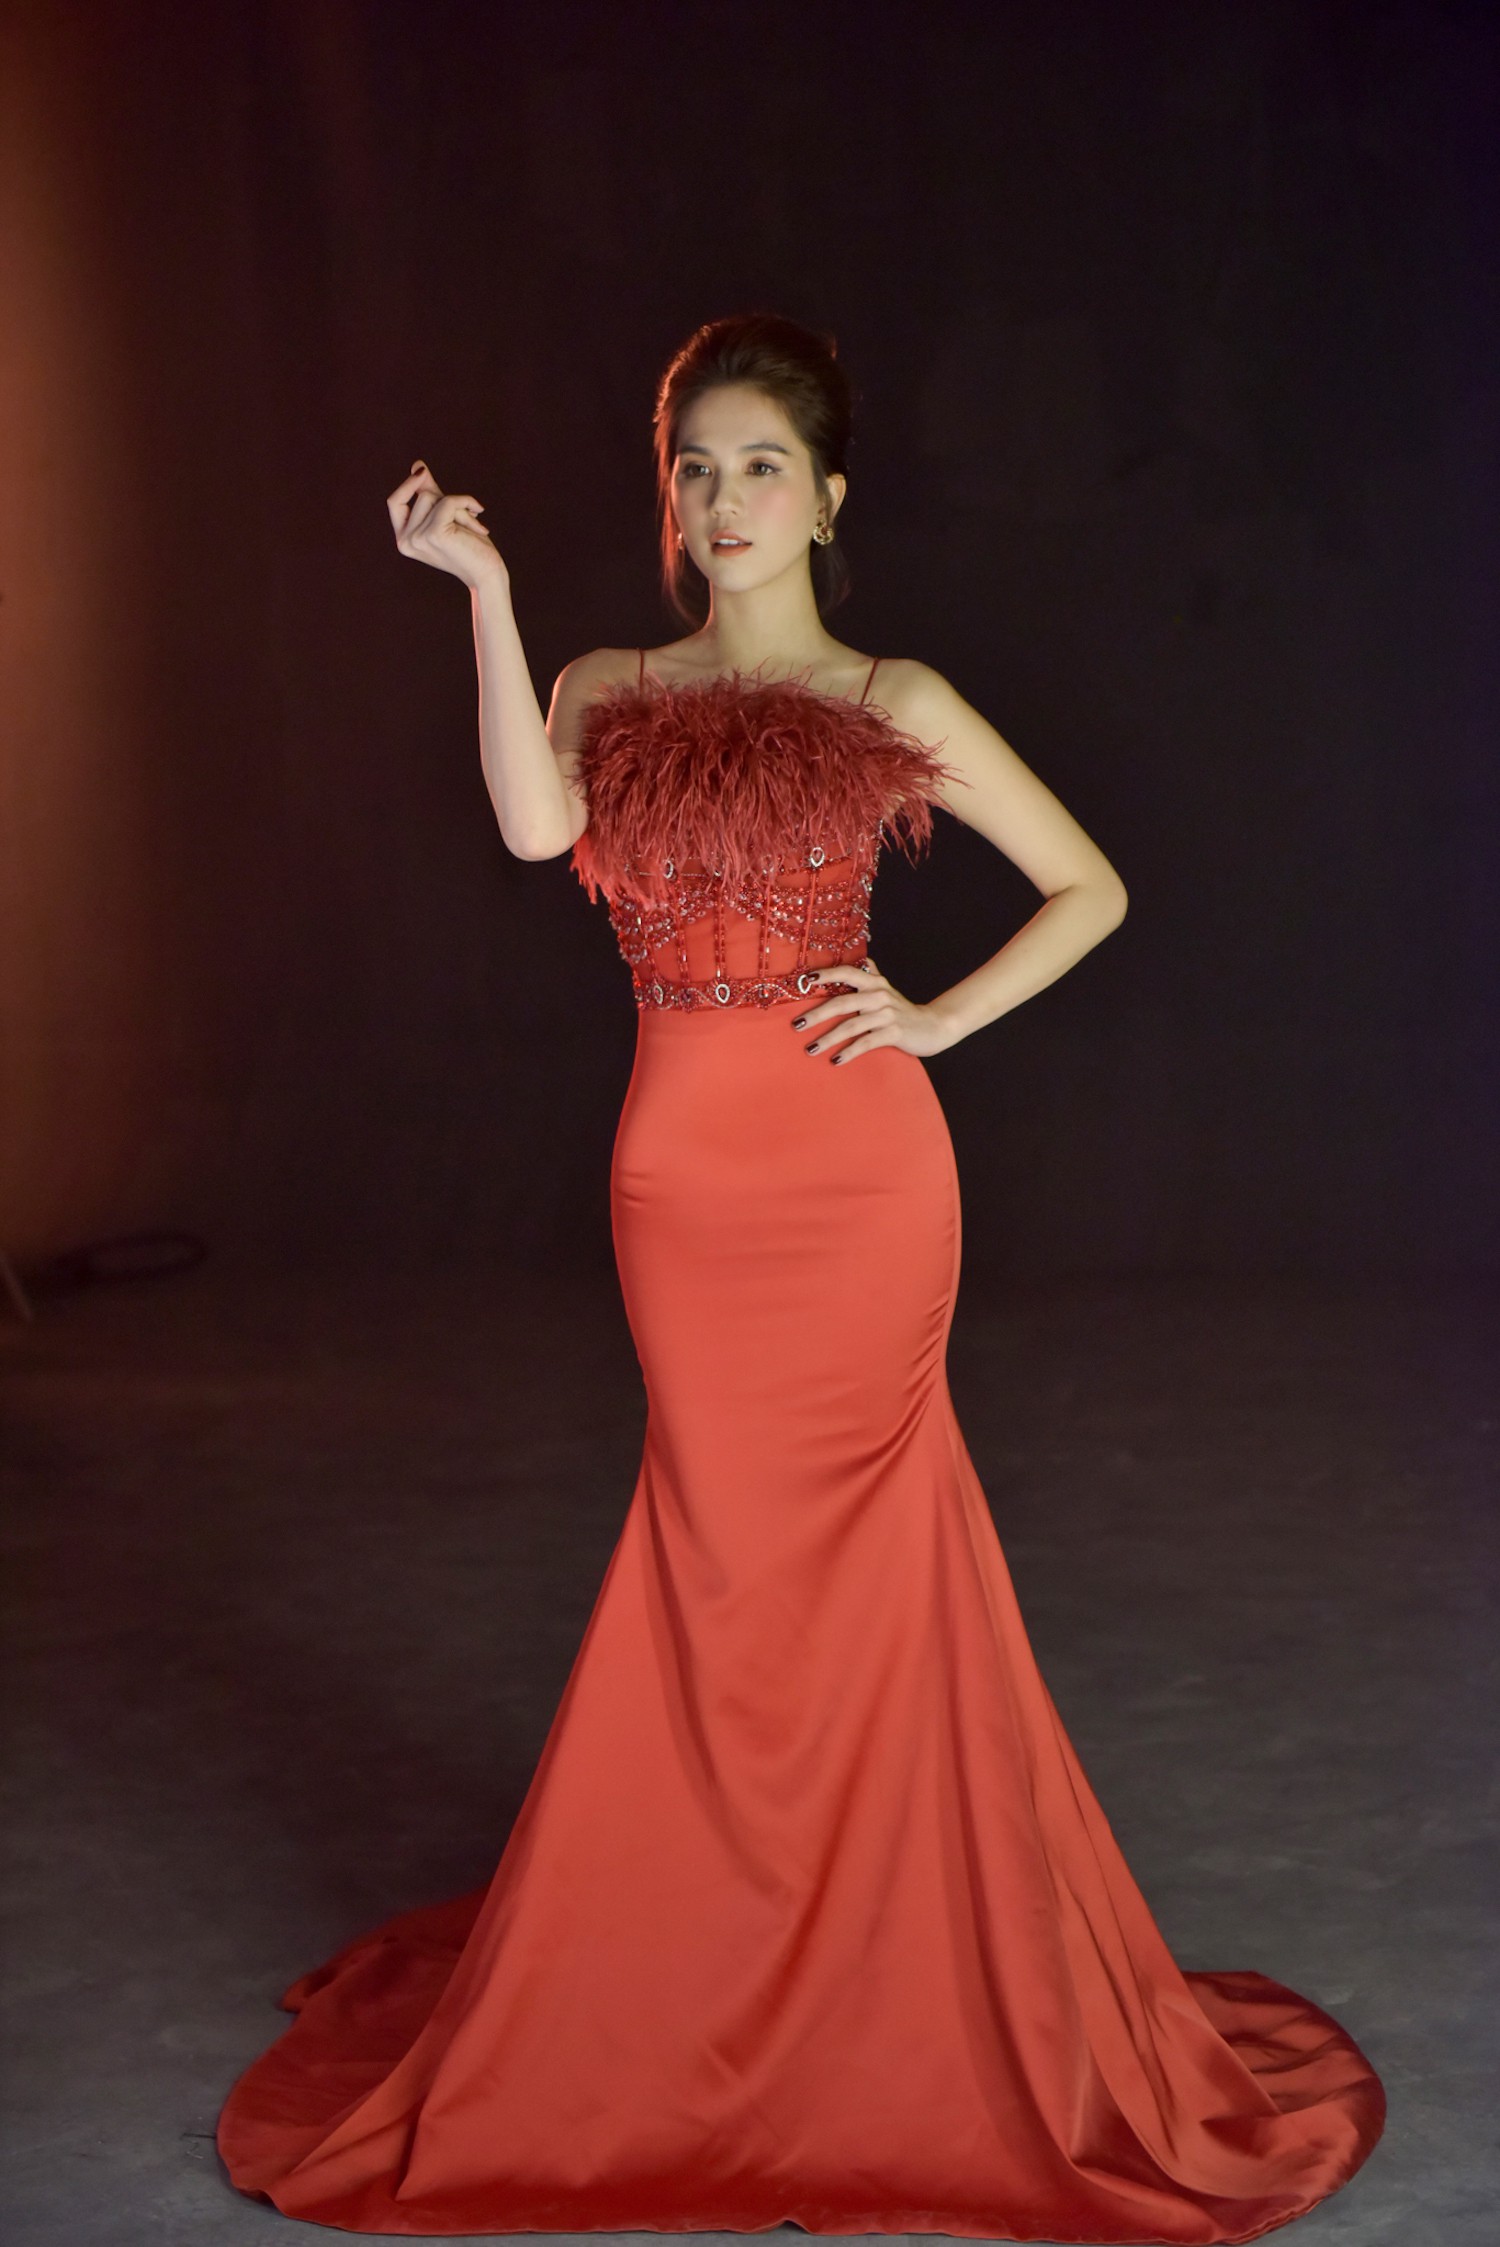 Võ Hoàng Yến, Chi Pu, Ngọc Trinh, Hương Giang sẽ là tứ đại mỹ nhân trong show diễn của NTK Đỗ Long - Ảnh 8.